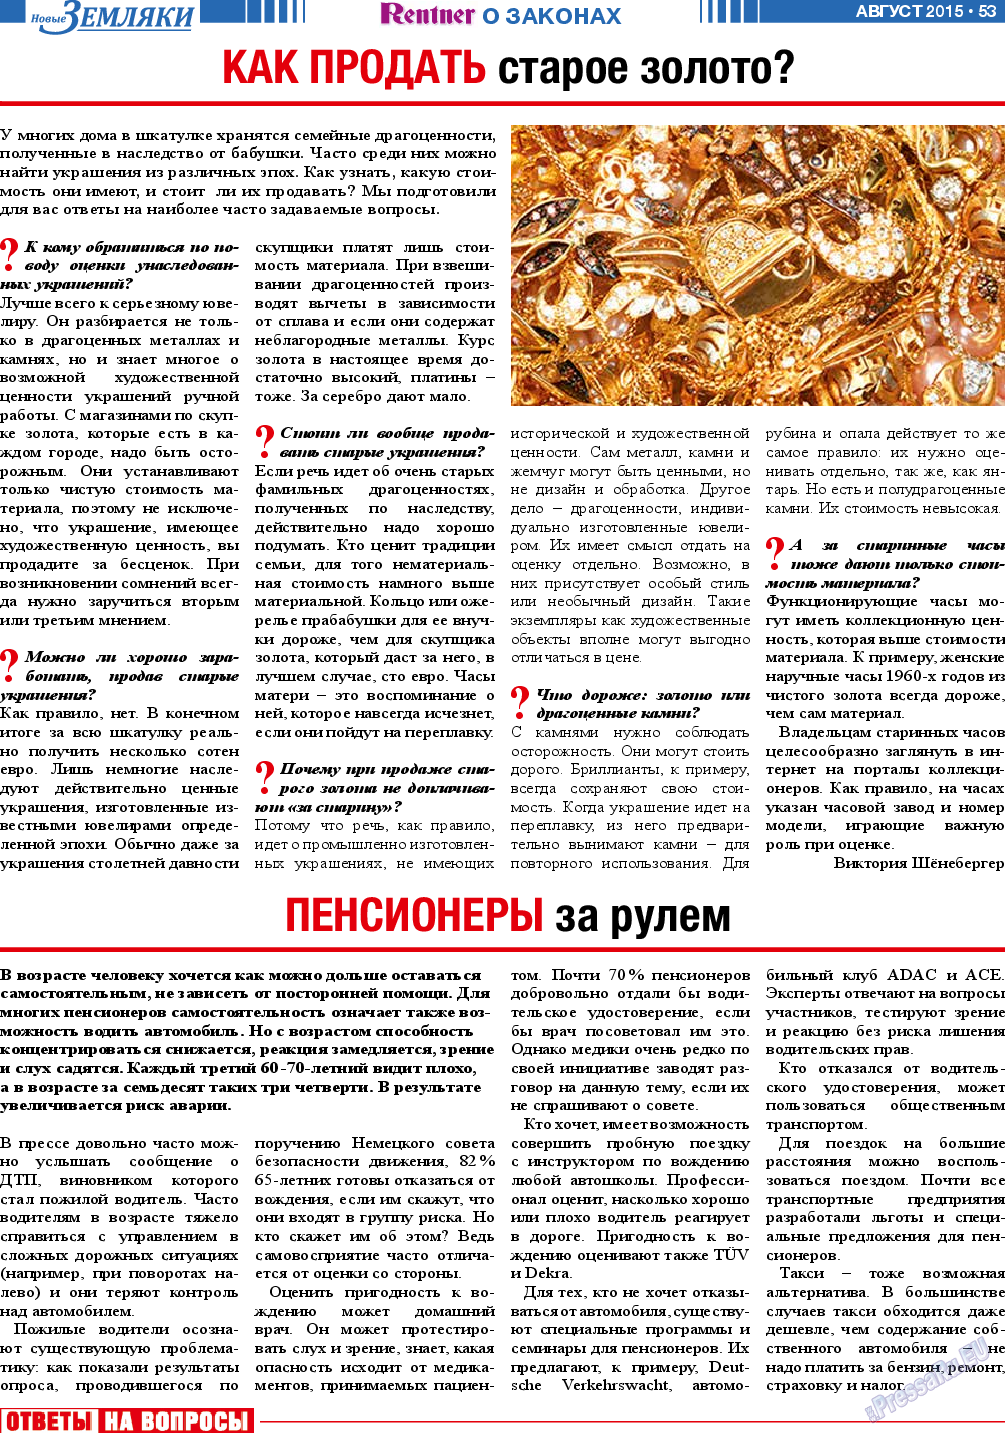 Новые Земляки, газета. 2015 №8 стр.53